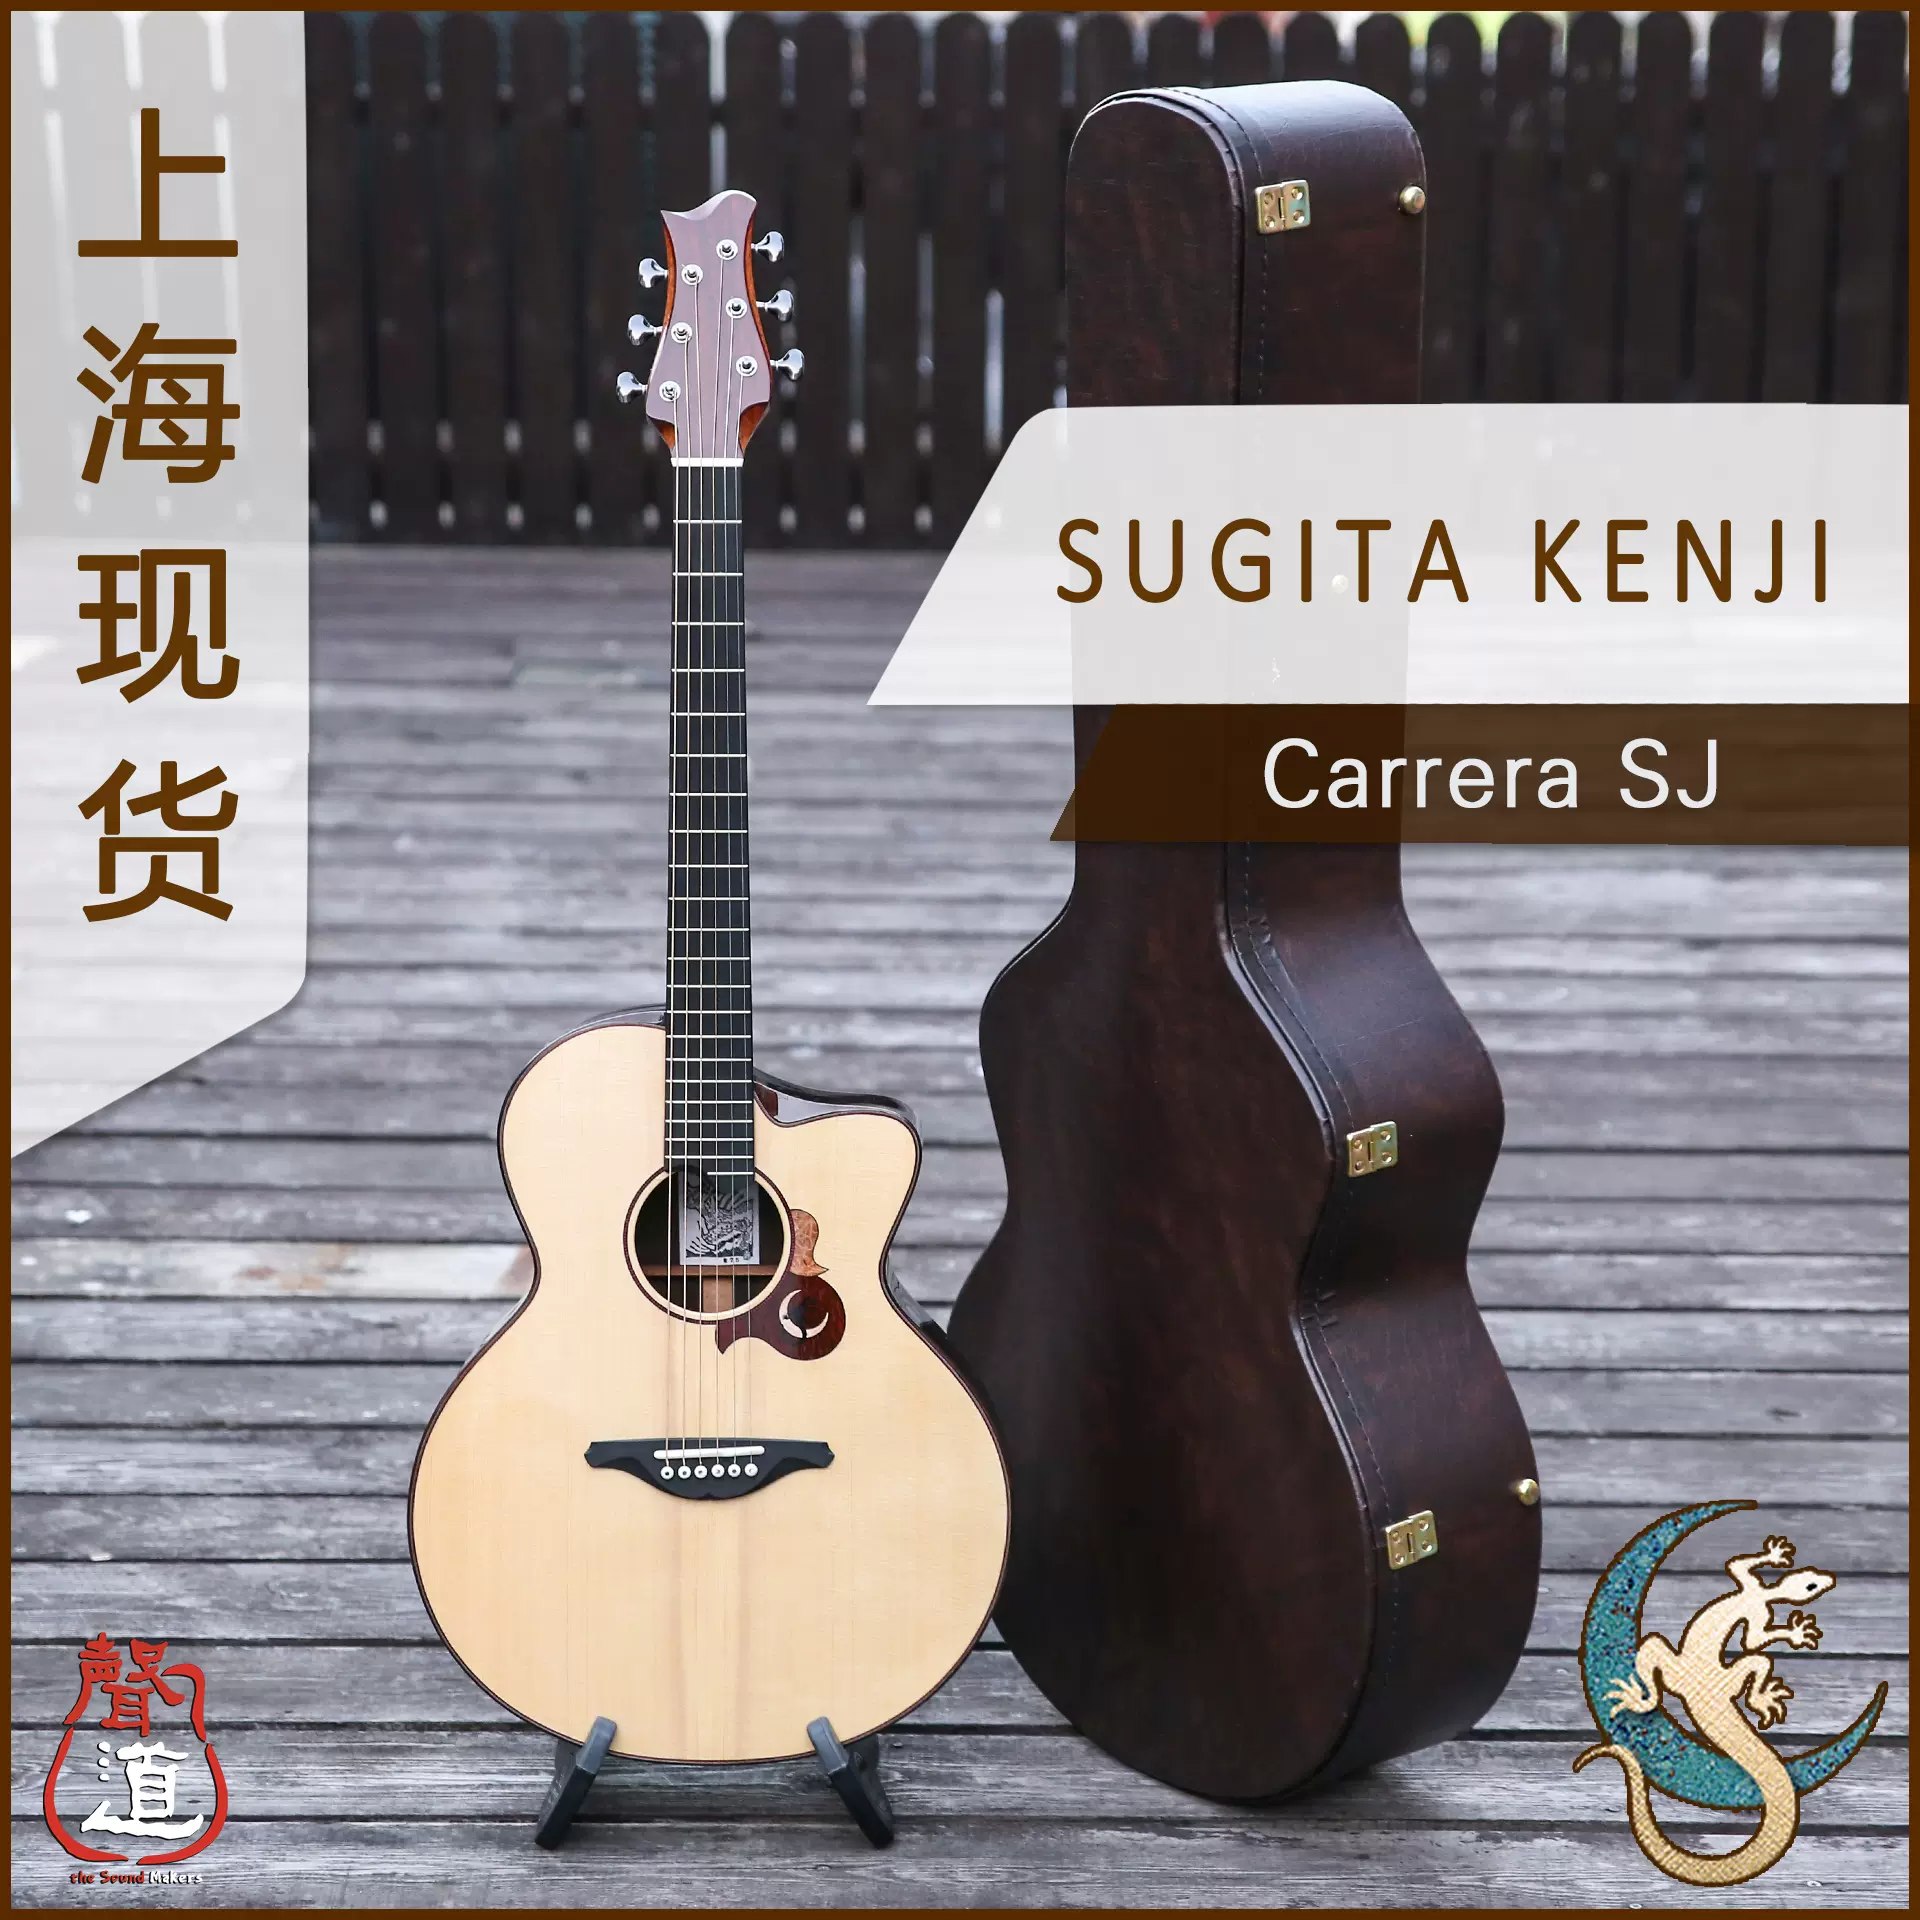 上海聲道預定杉田健司手工吉他Sugita Kenji Carrera SJ-Taobao